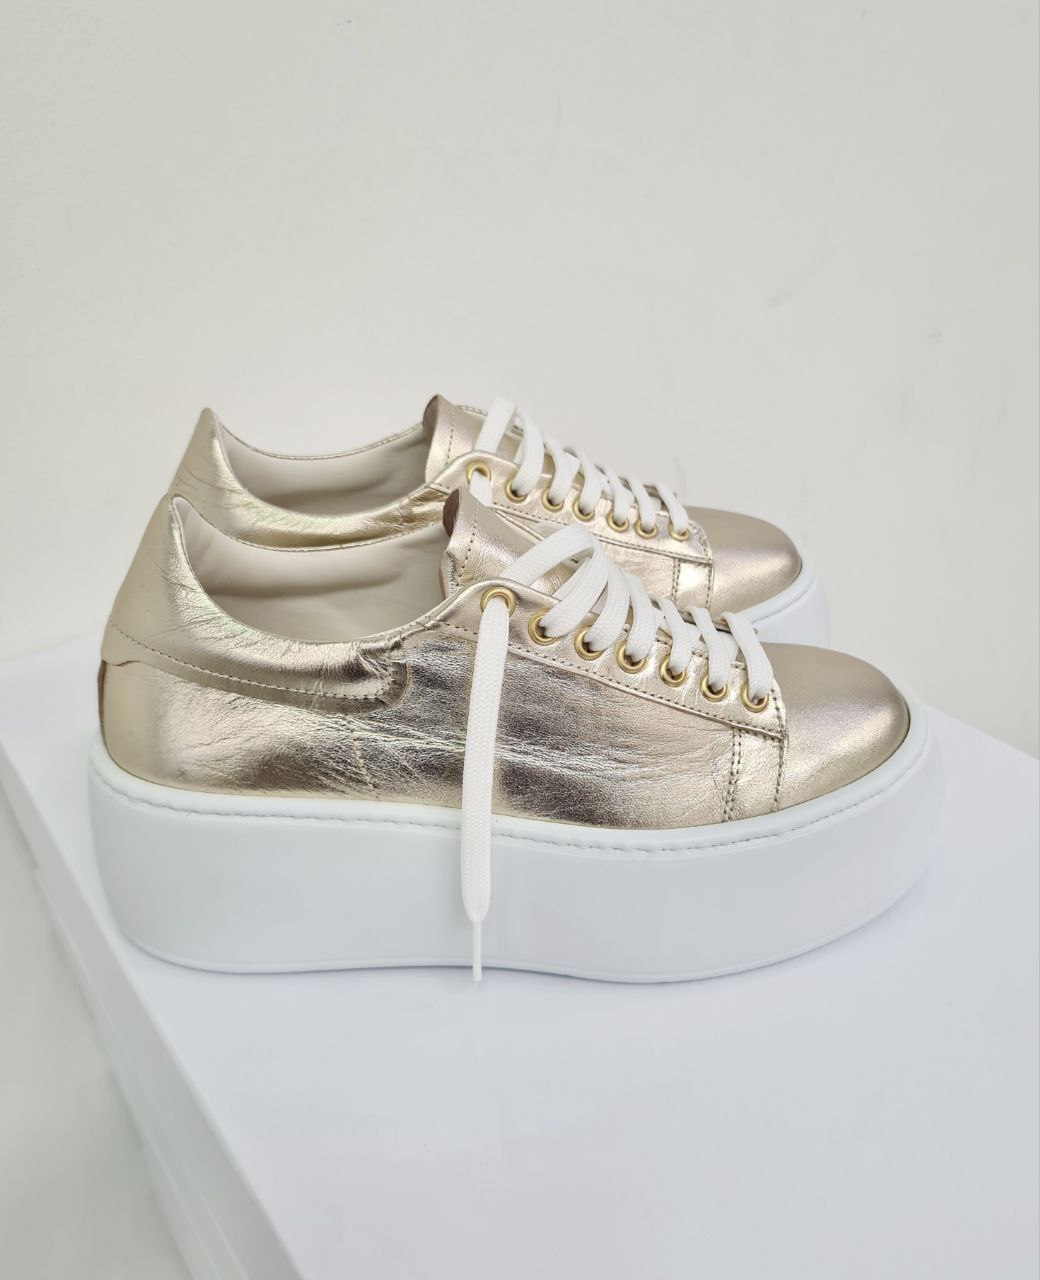 Итальянская одежда, бренд Spazio moda - Обувь, арт. 73228534